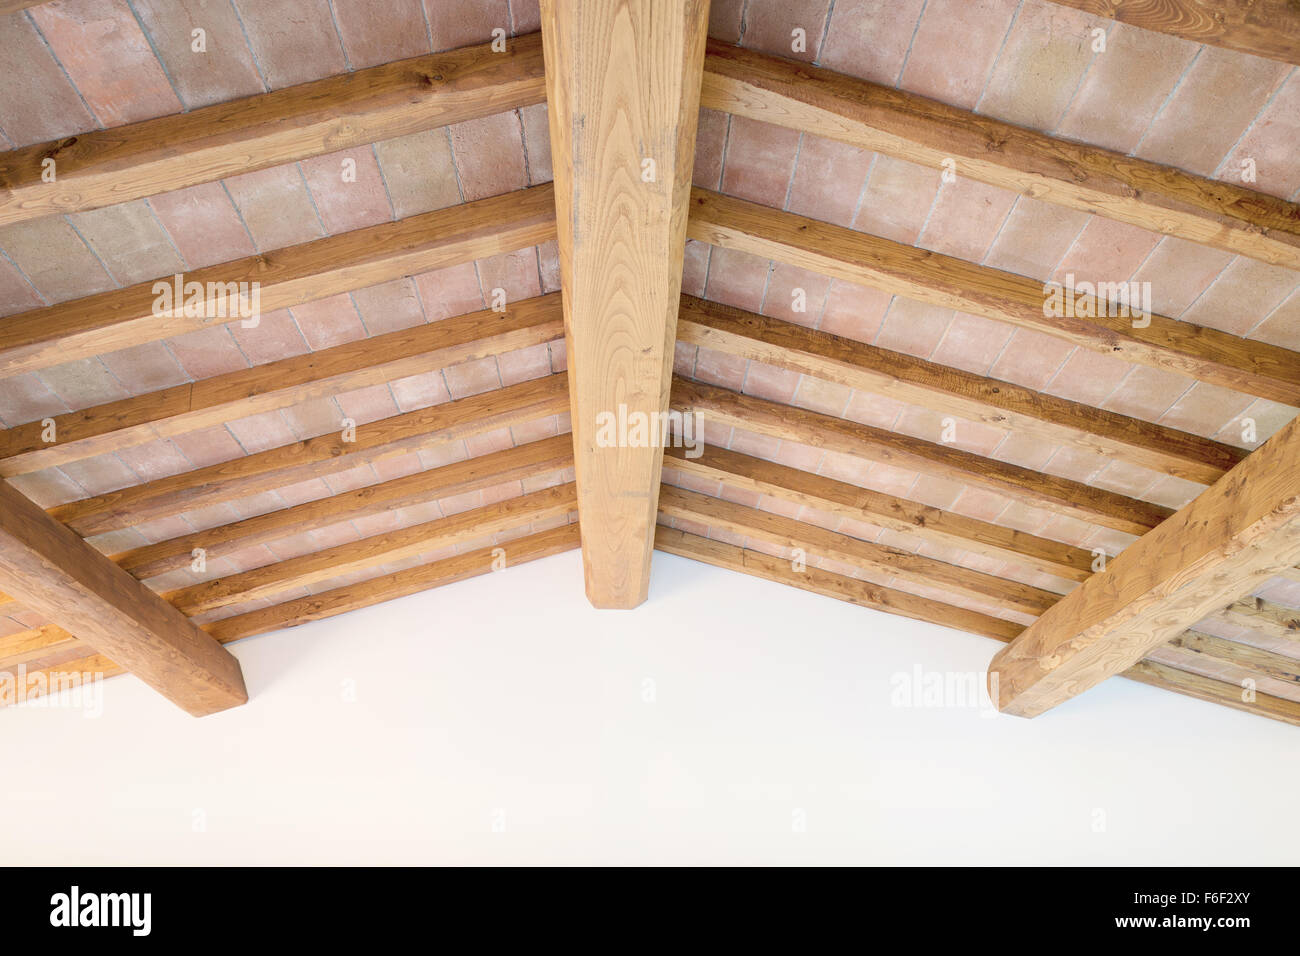 Toscana roble tradicional techo de vigas de madera, paredes de ladrillos rojos y patrón de fondo. Interiores rurales clásica italiana. Foto de stock